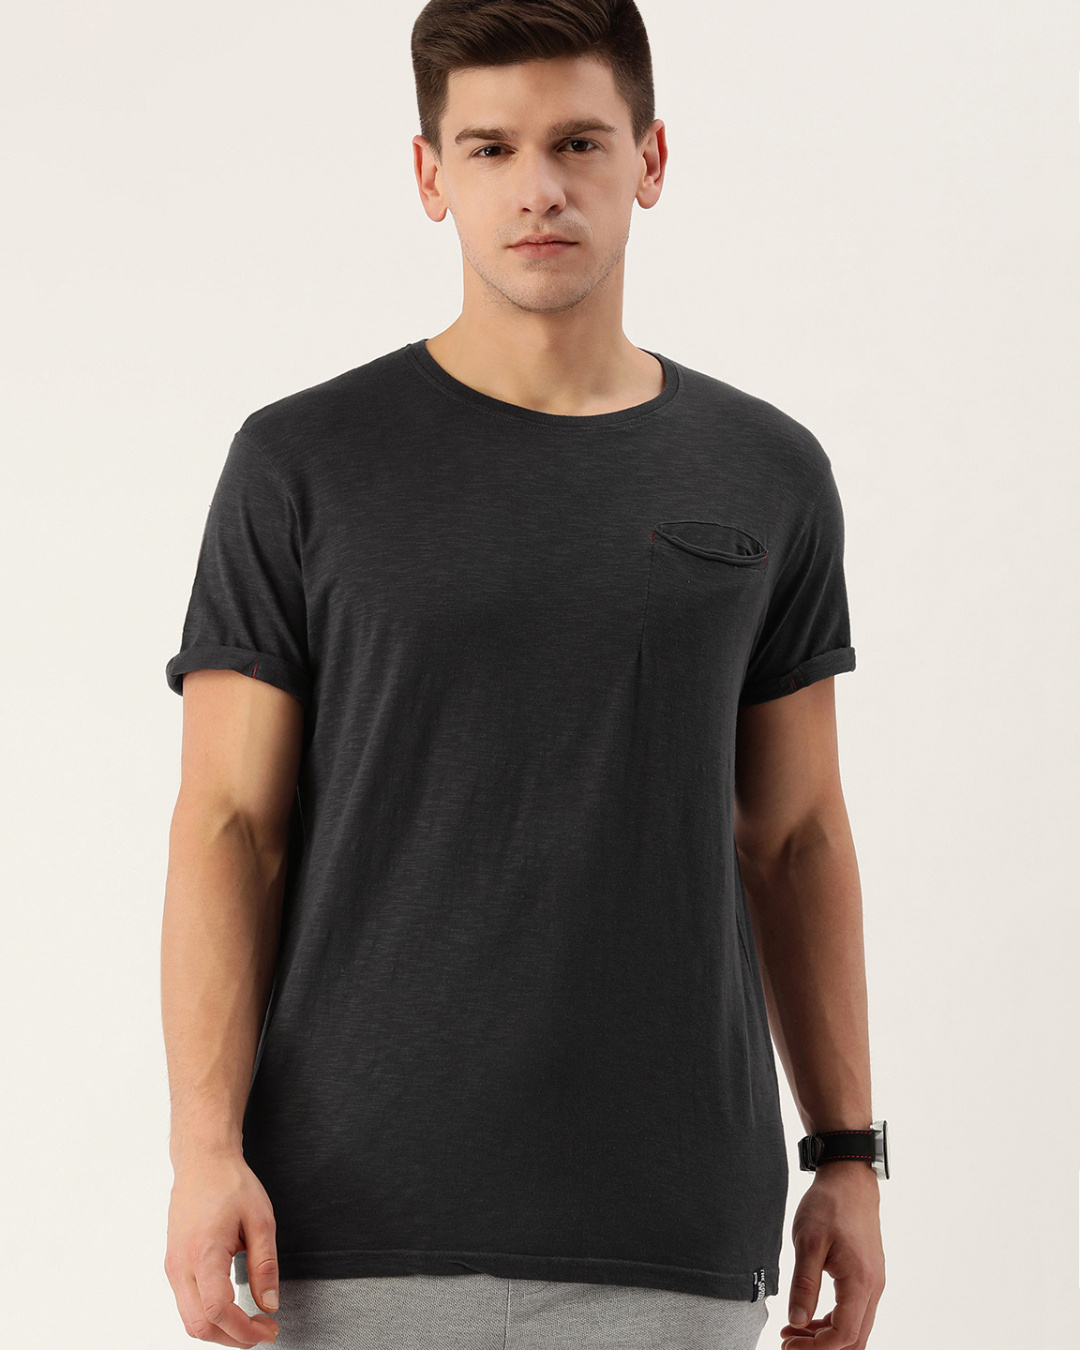 Buy Men's Grey Cotton T-shirt for Men Grey Online at Bewakoof